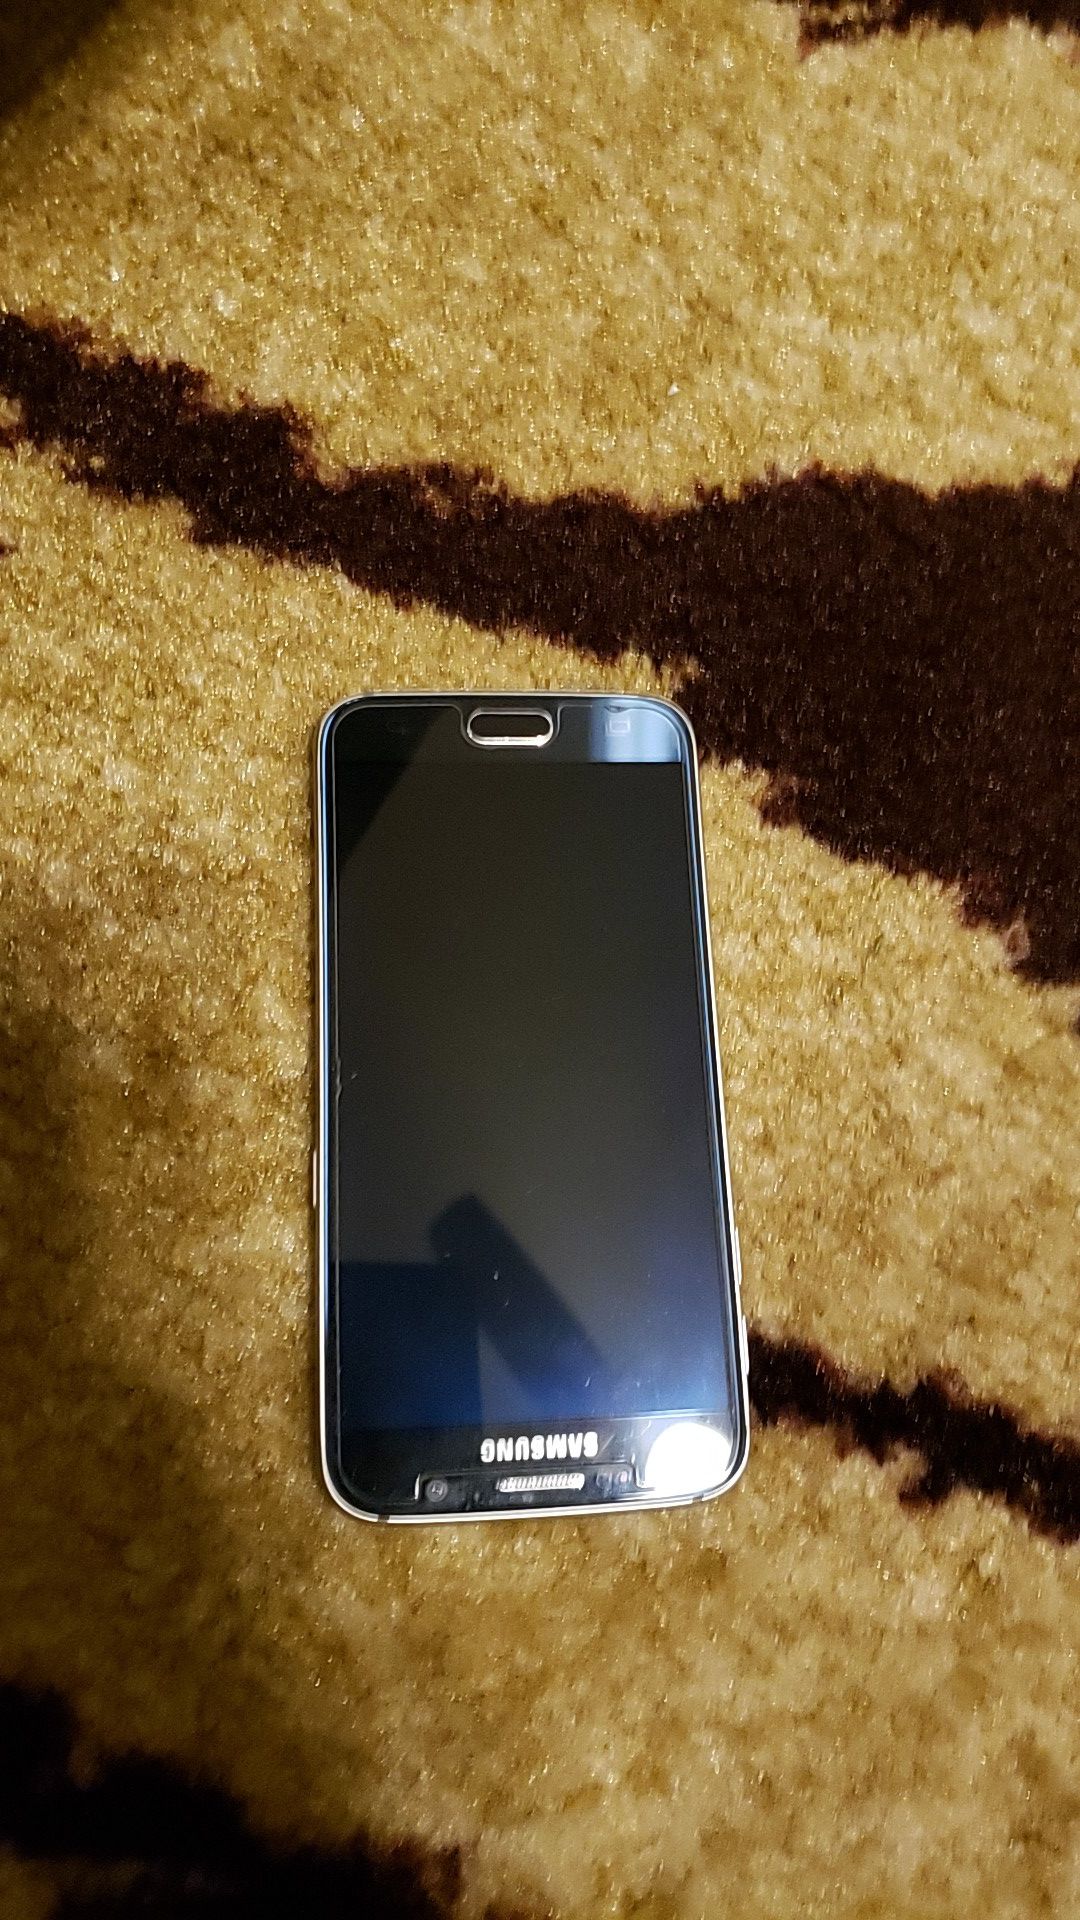 Unlocked Samsung s6